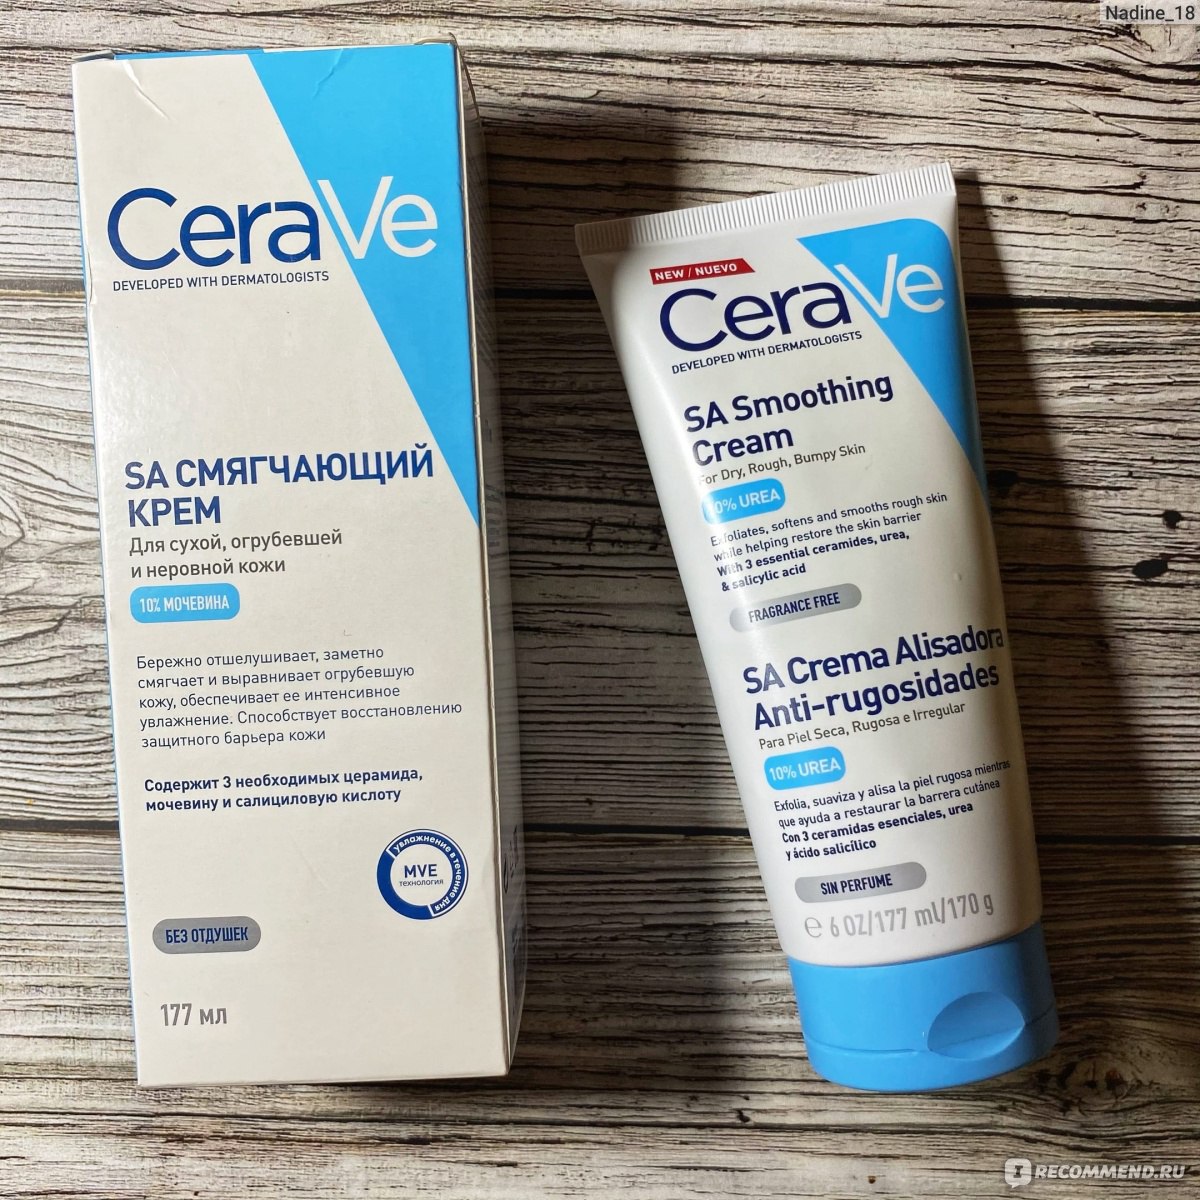 Крем CeraVe SA Smoothing Cream - «Для сухой и огрубевшей кожи подходит .